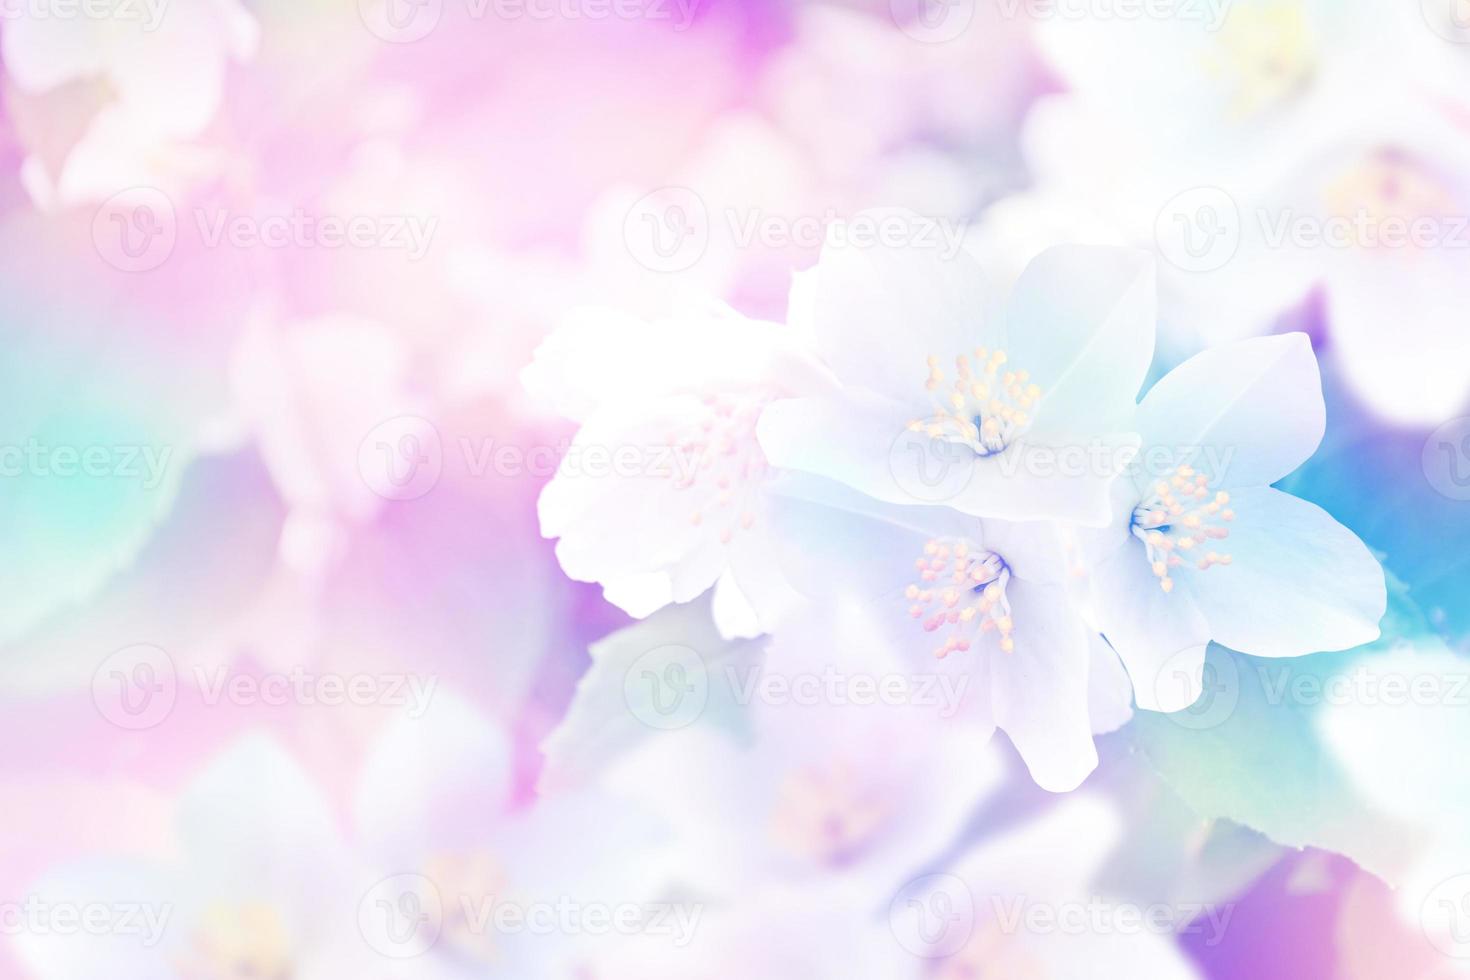 paysage de printemps avec de délicates fleurs de jasmin. fleurs blanches photo